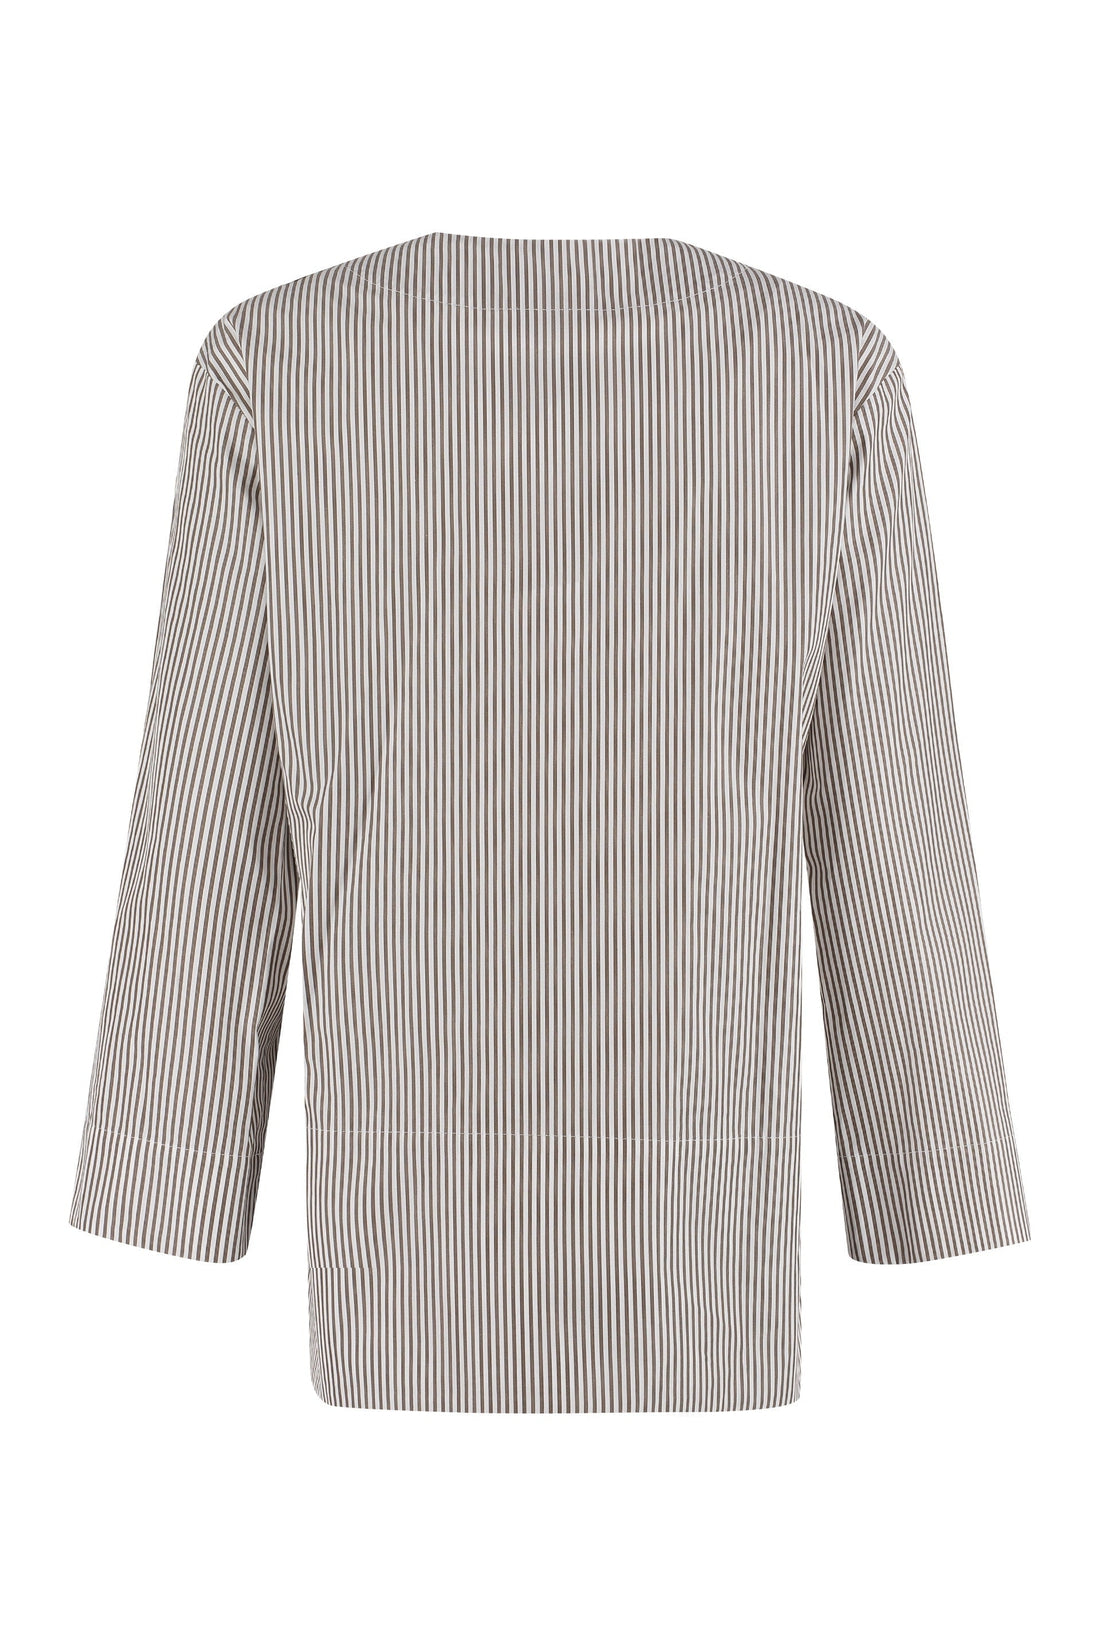 S MAX MARA-OUTLET-SALE-Affori striped cotton tunic-shirt-ARCHIVIST